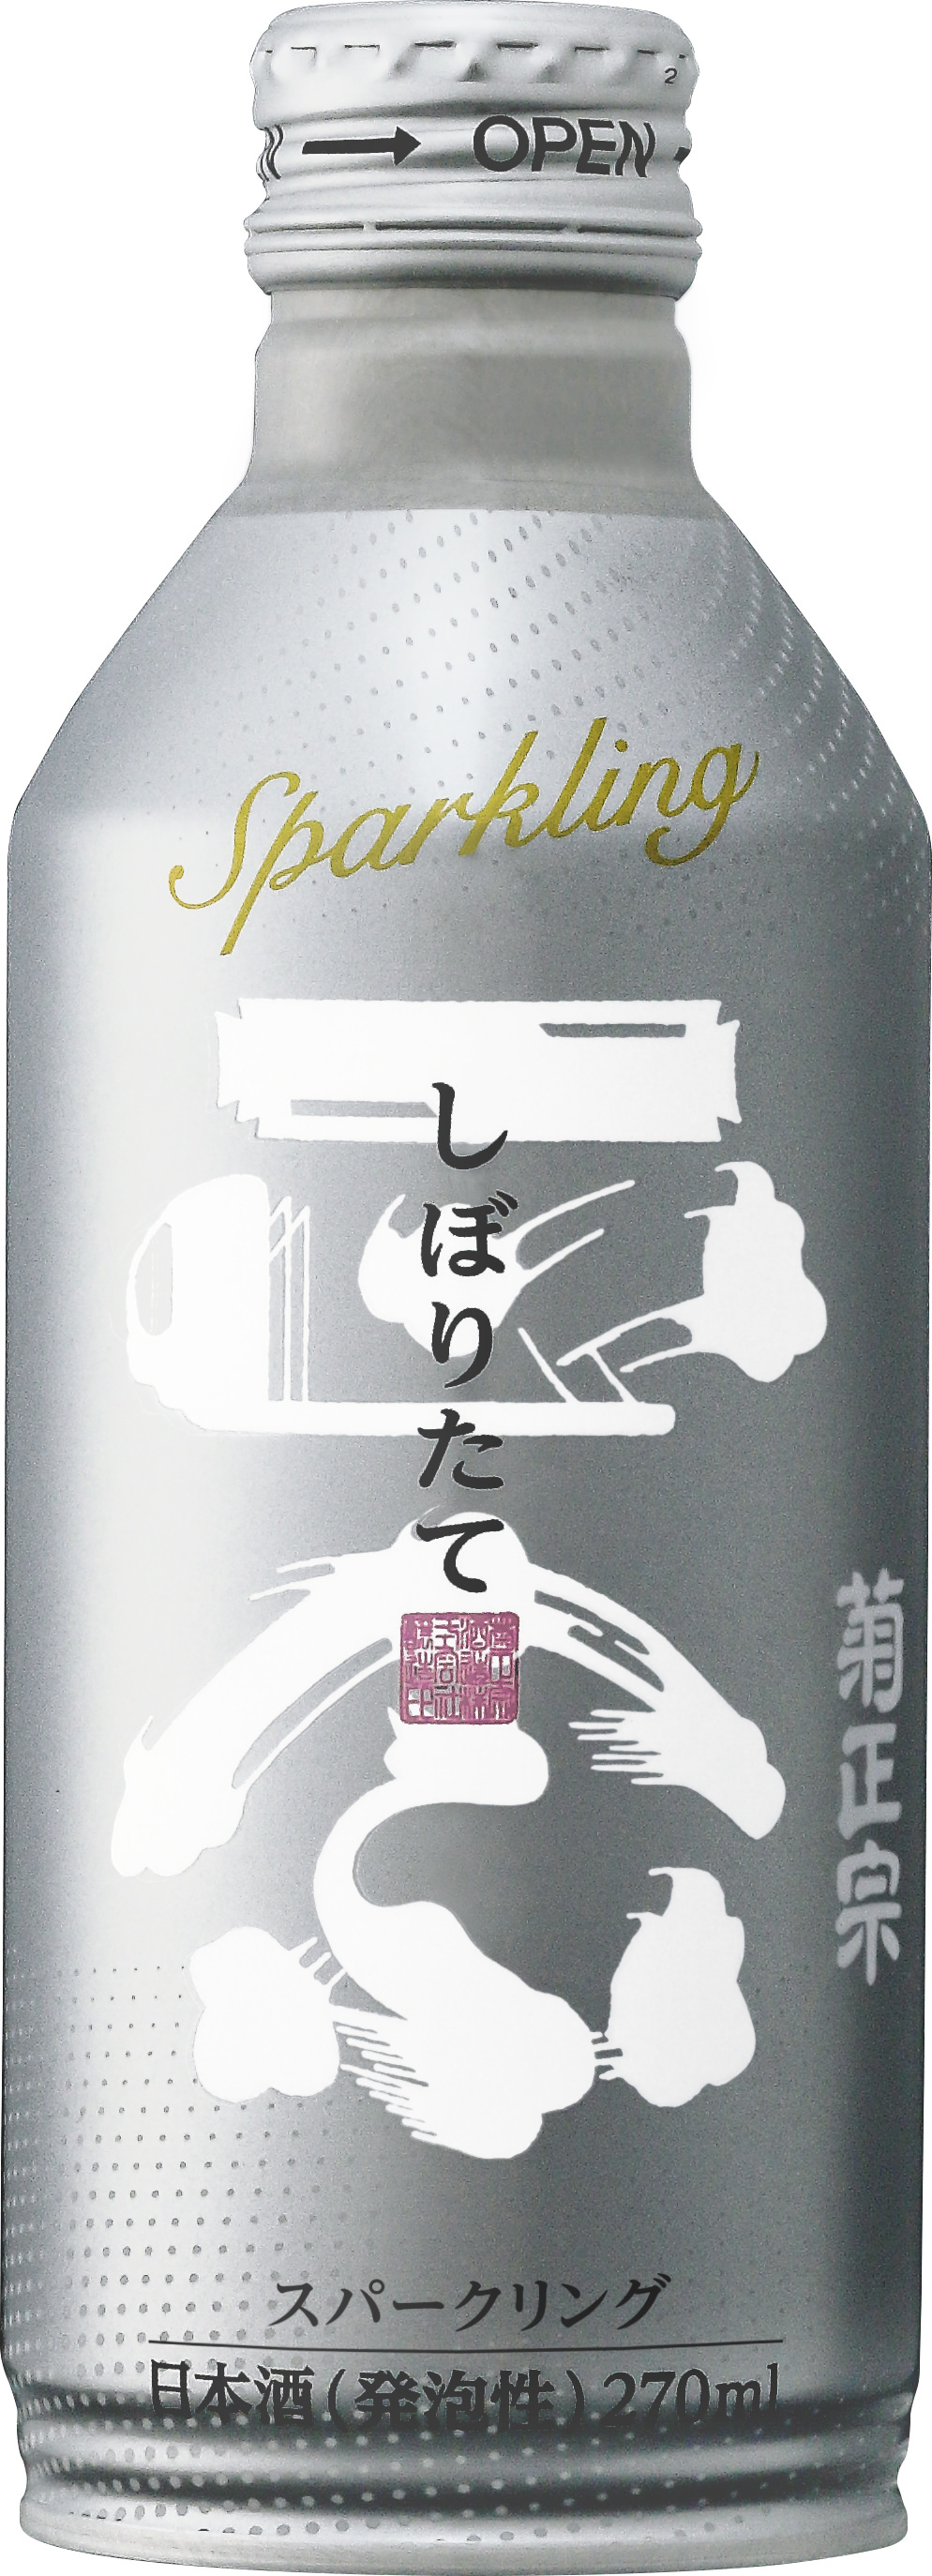 島のパスタソースシリーズより香川のブランド精肉を
使ったフォンドボー仕立てのボロネーゼが4月24日に登場